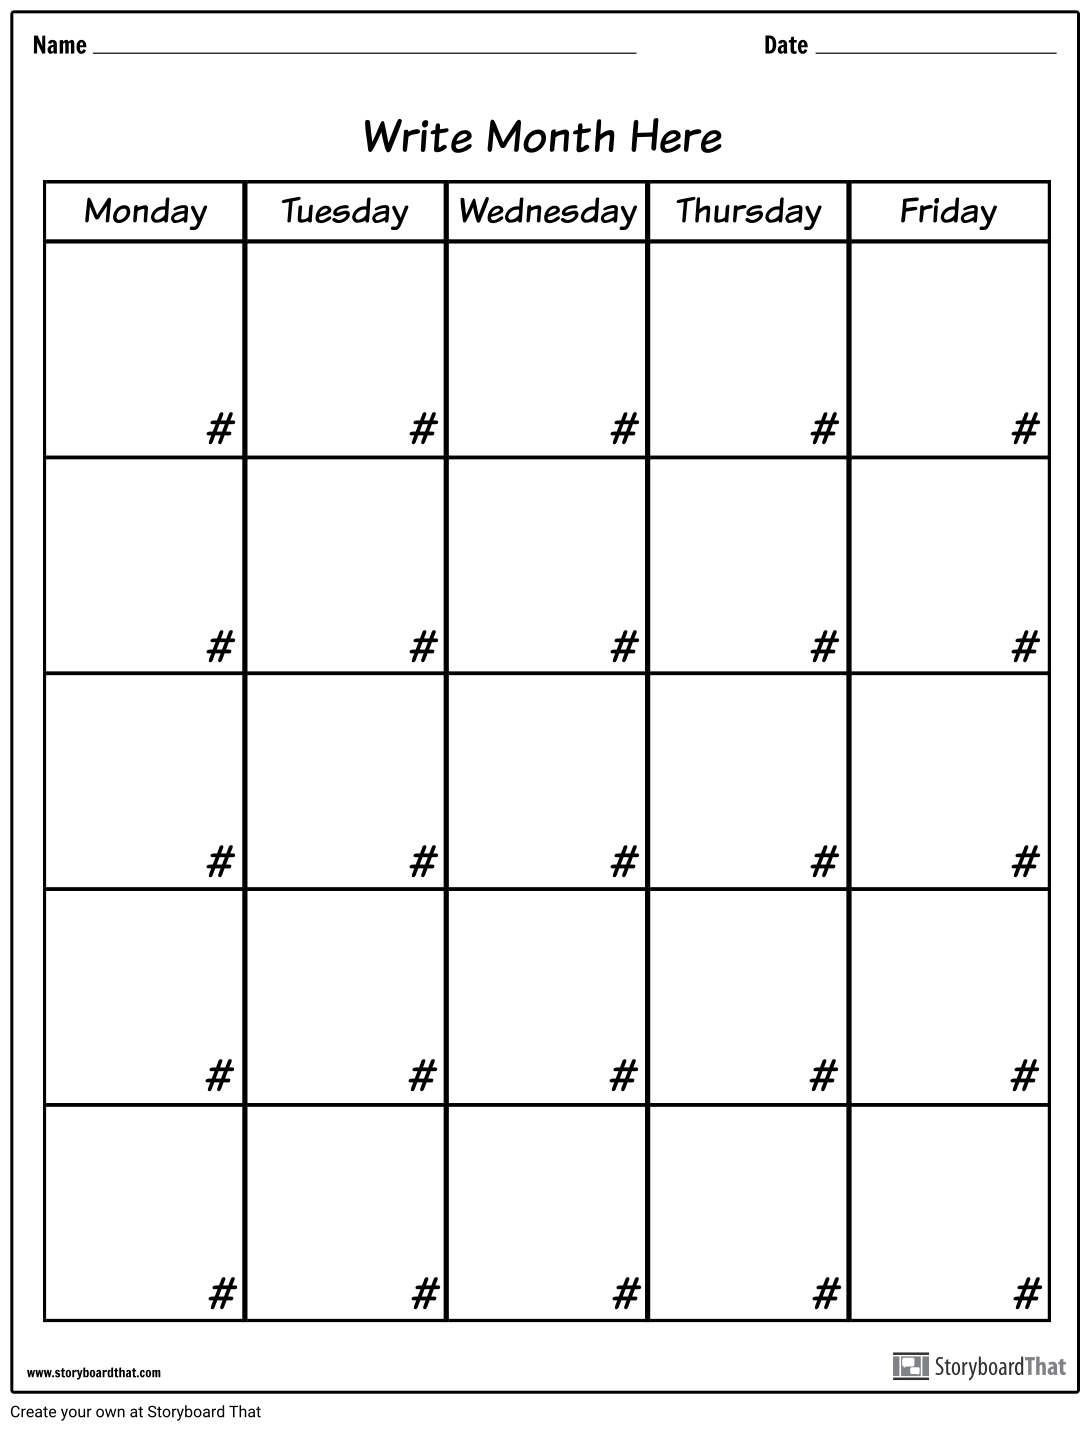 לוח שנה - יום בשבוע